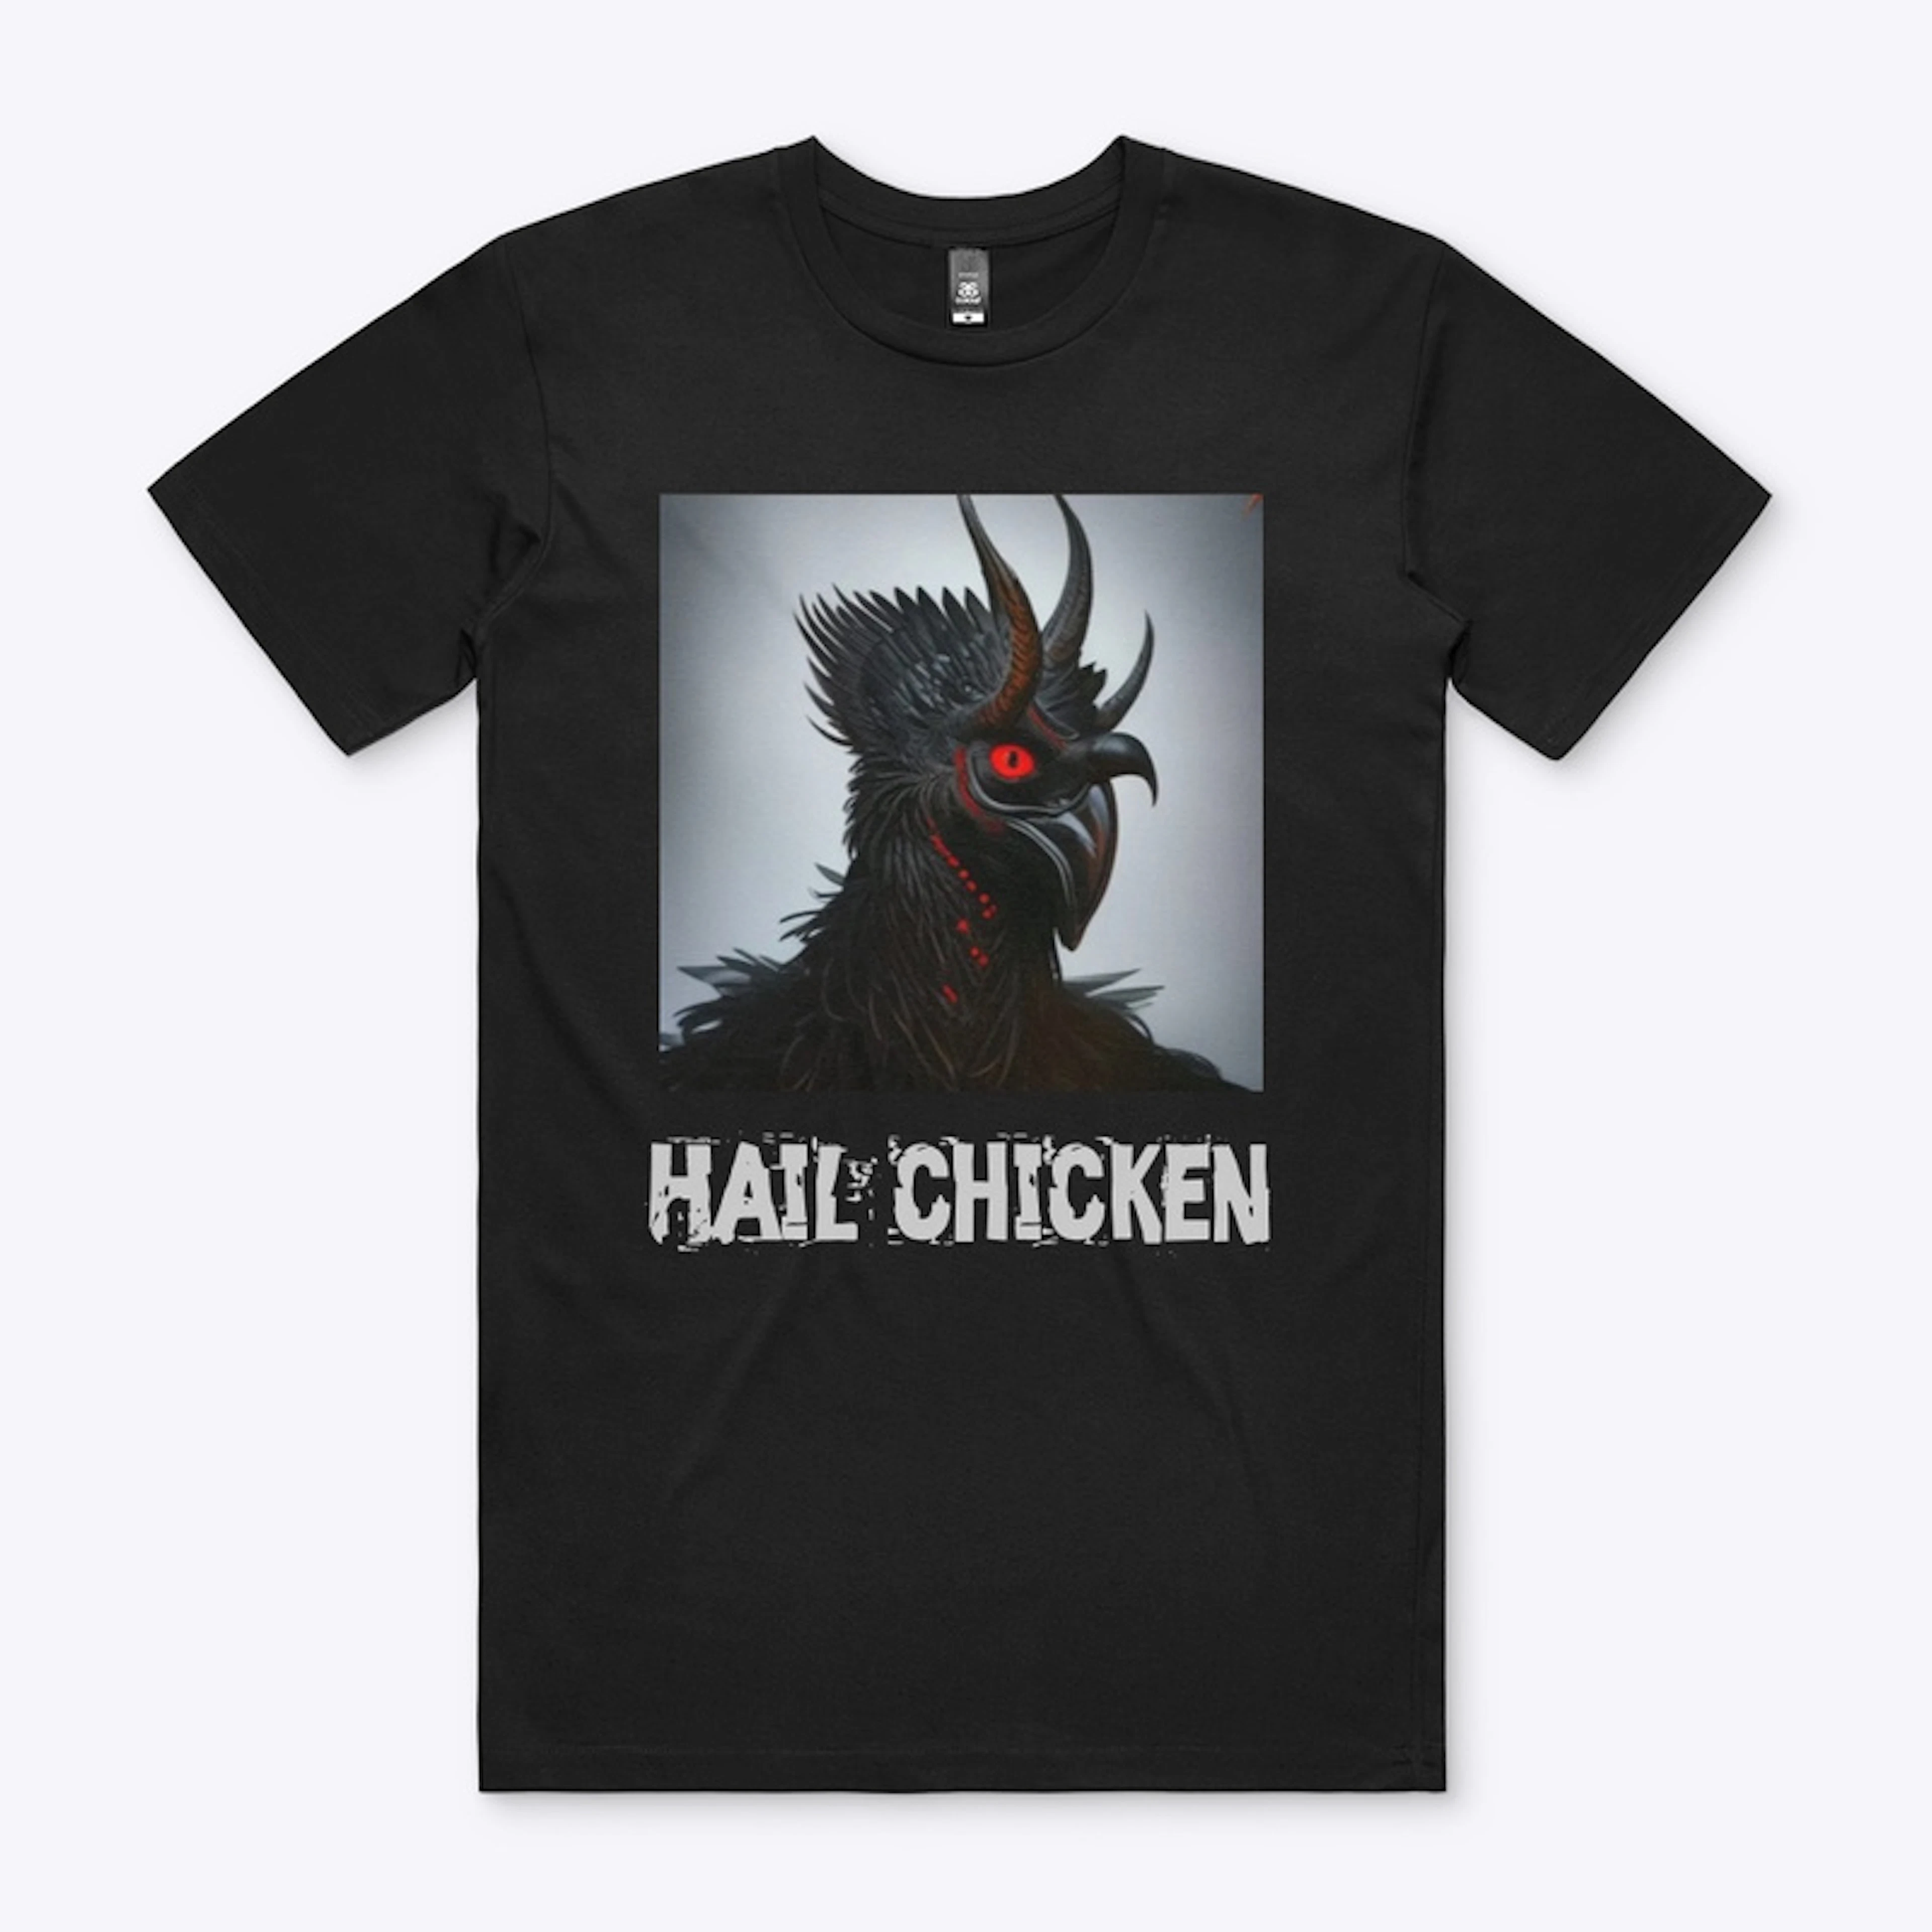 Hail chicken 